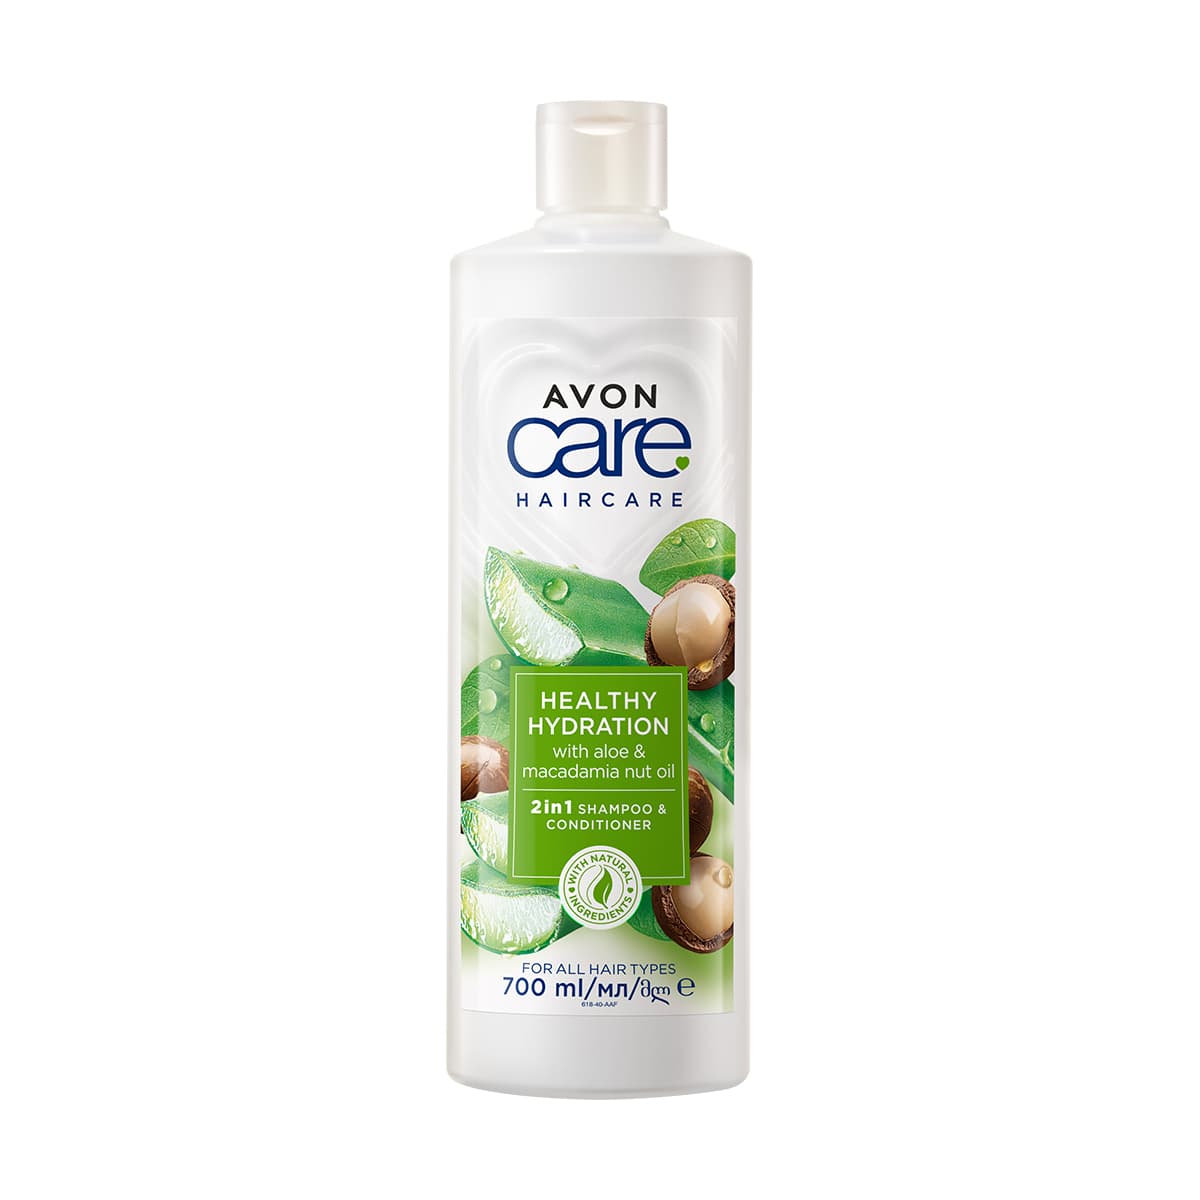 Avon Care Aloe & Macadamia Nut Oil 2 in 1 Shampoo & Conditioner 700ml